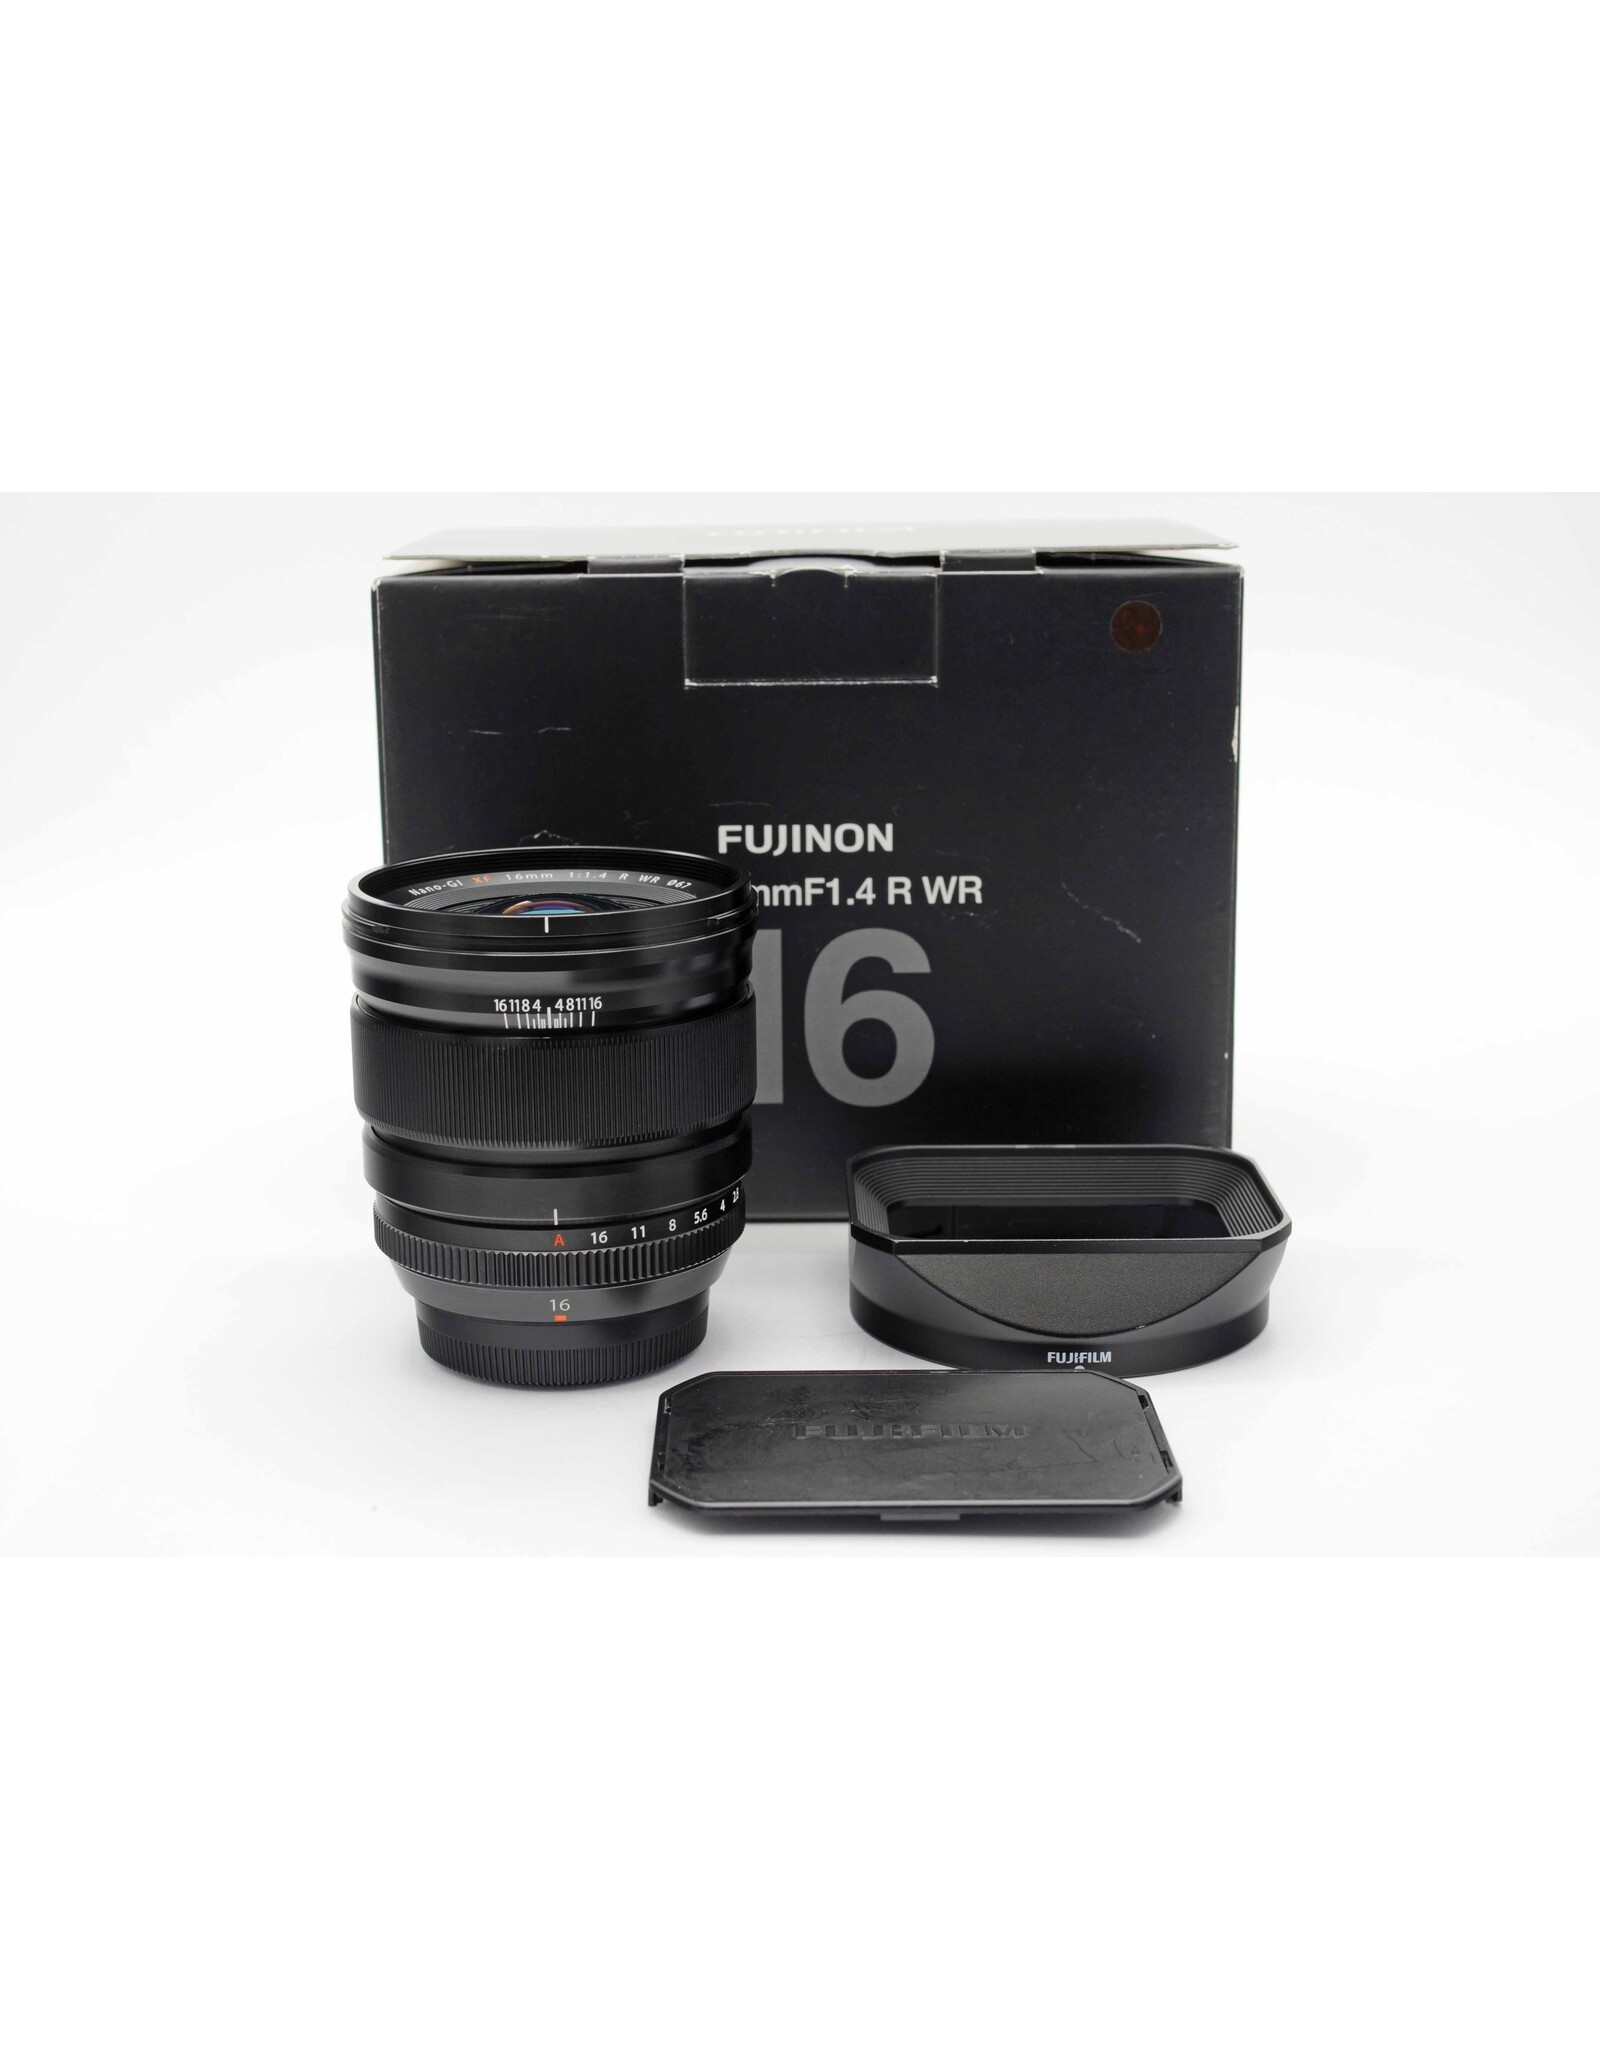 Fujifilm Fuji XF16mm f1.4 R WR   A3111102